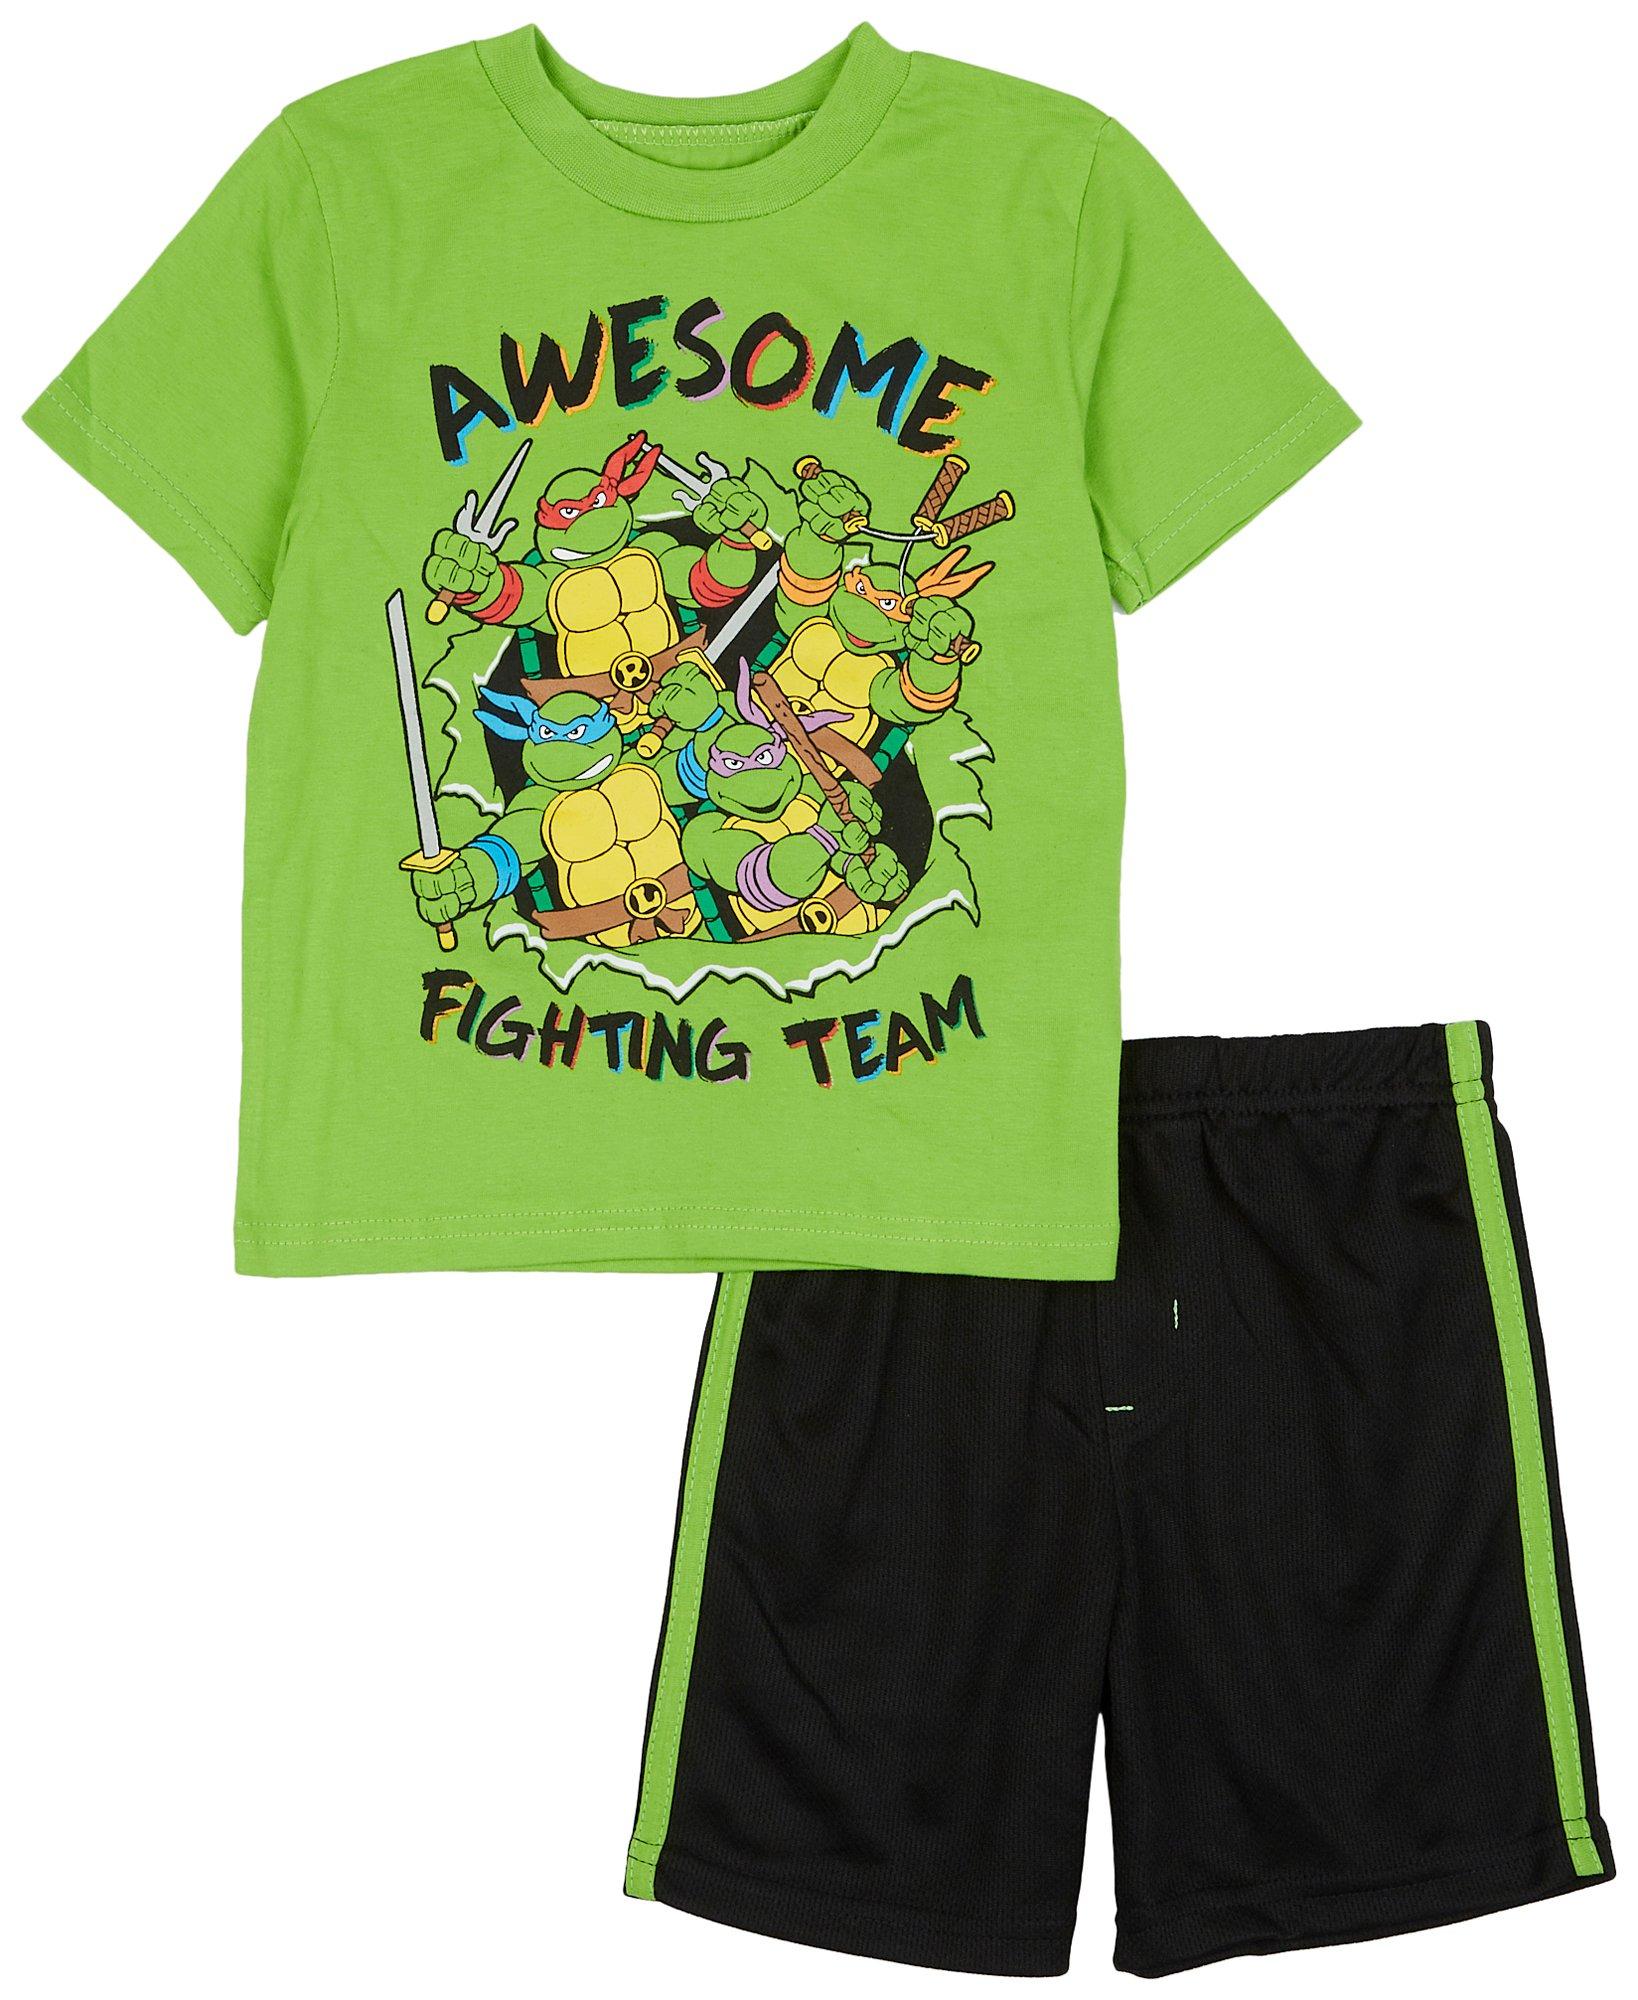 Toddler Boys' 4pc Teenage Mutant Ninja Turtles Snug Fit Pajama Set - Green  4T